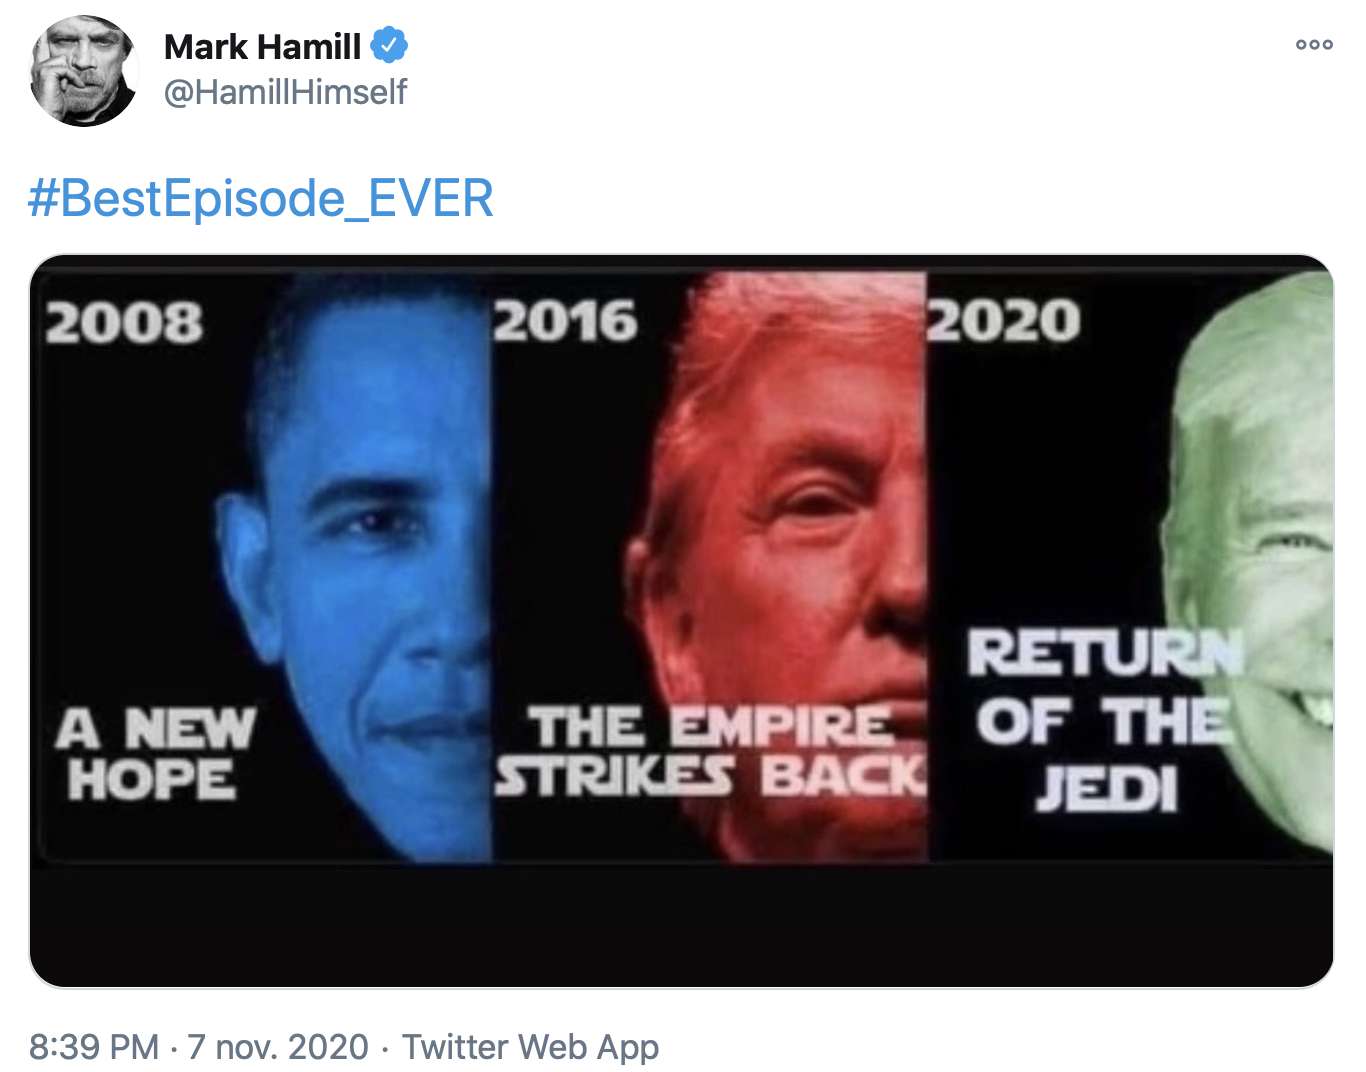 Mark Hamill a twitté le visage des trois présidents Obama, Trump, Biden en reprenant les titres des trois StarWars originaux